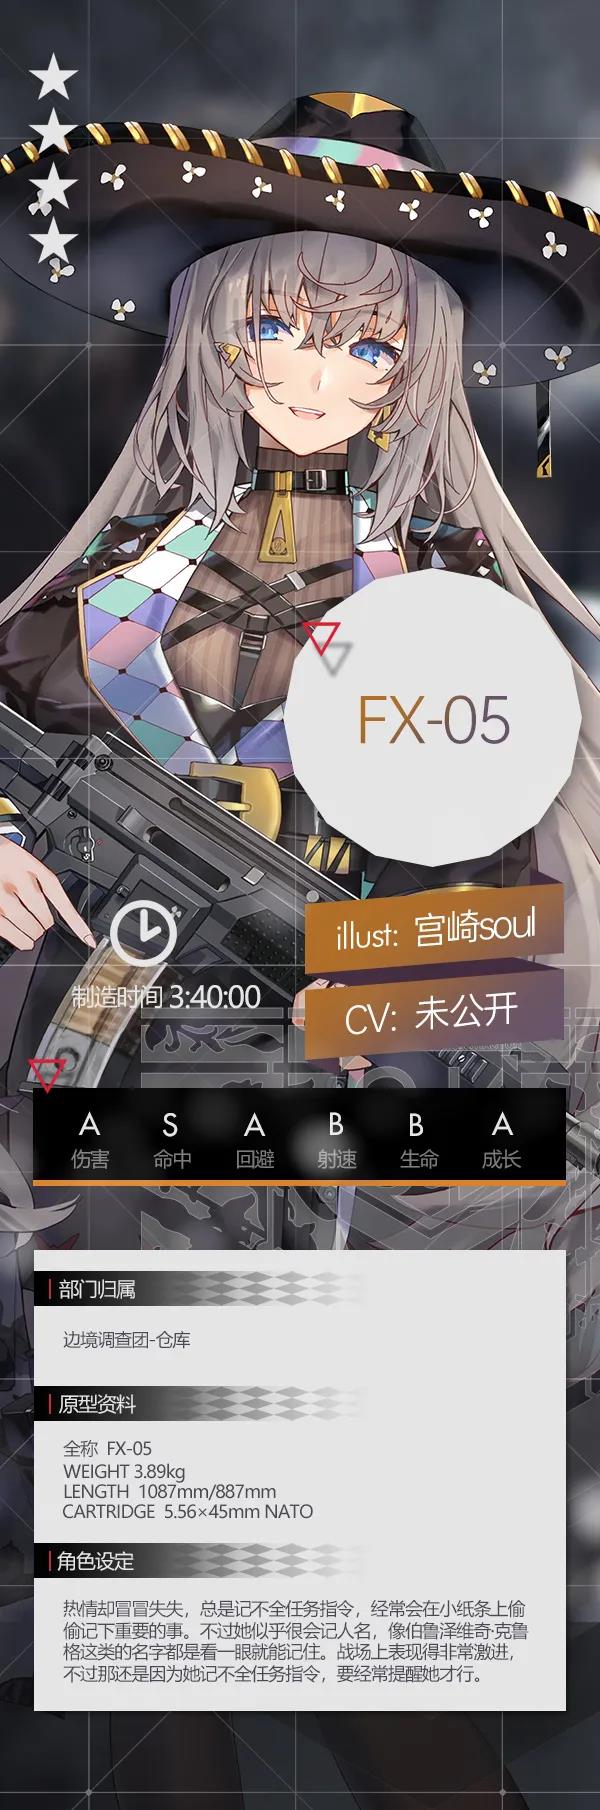 少女前线四星突击步枪人形FX-05介绍